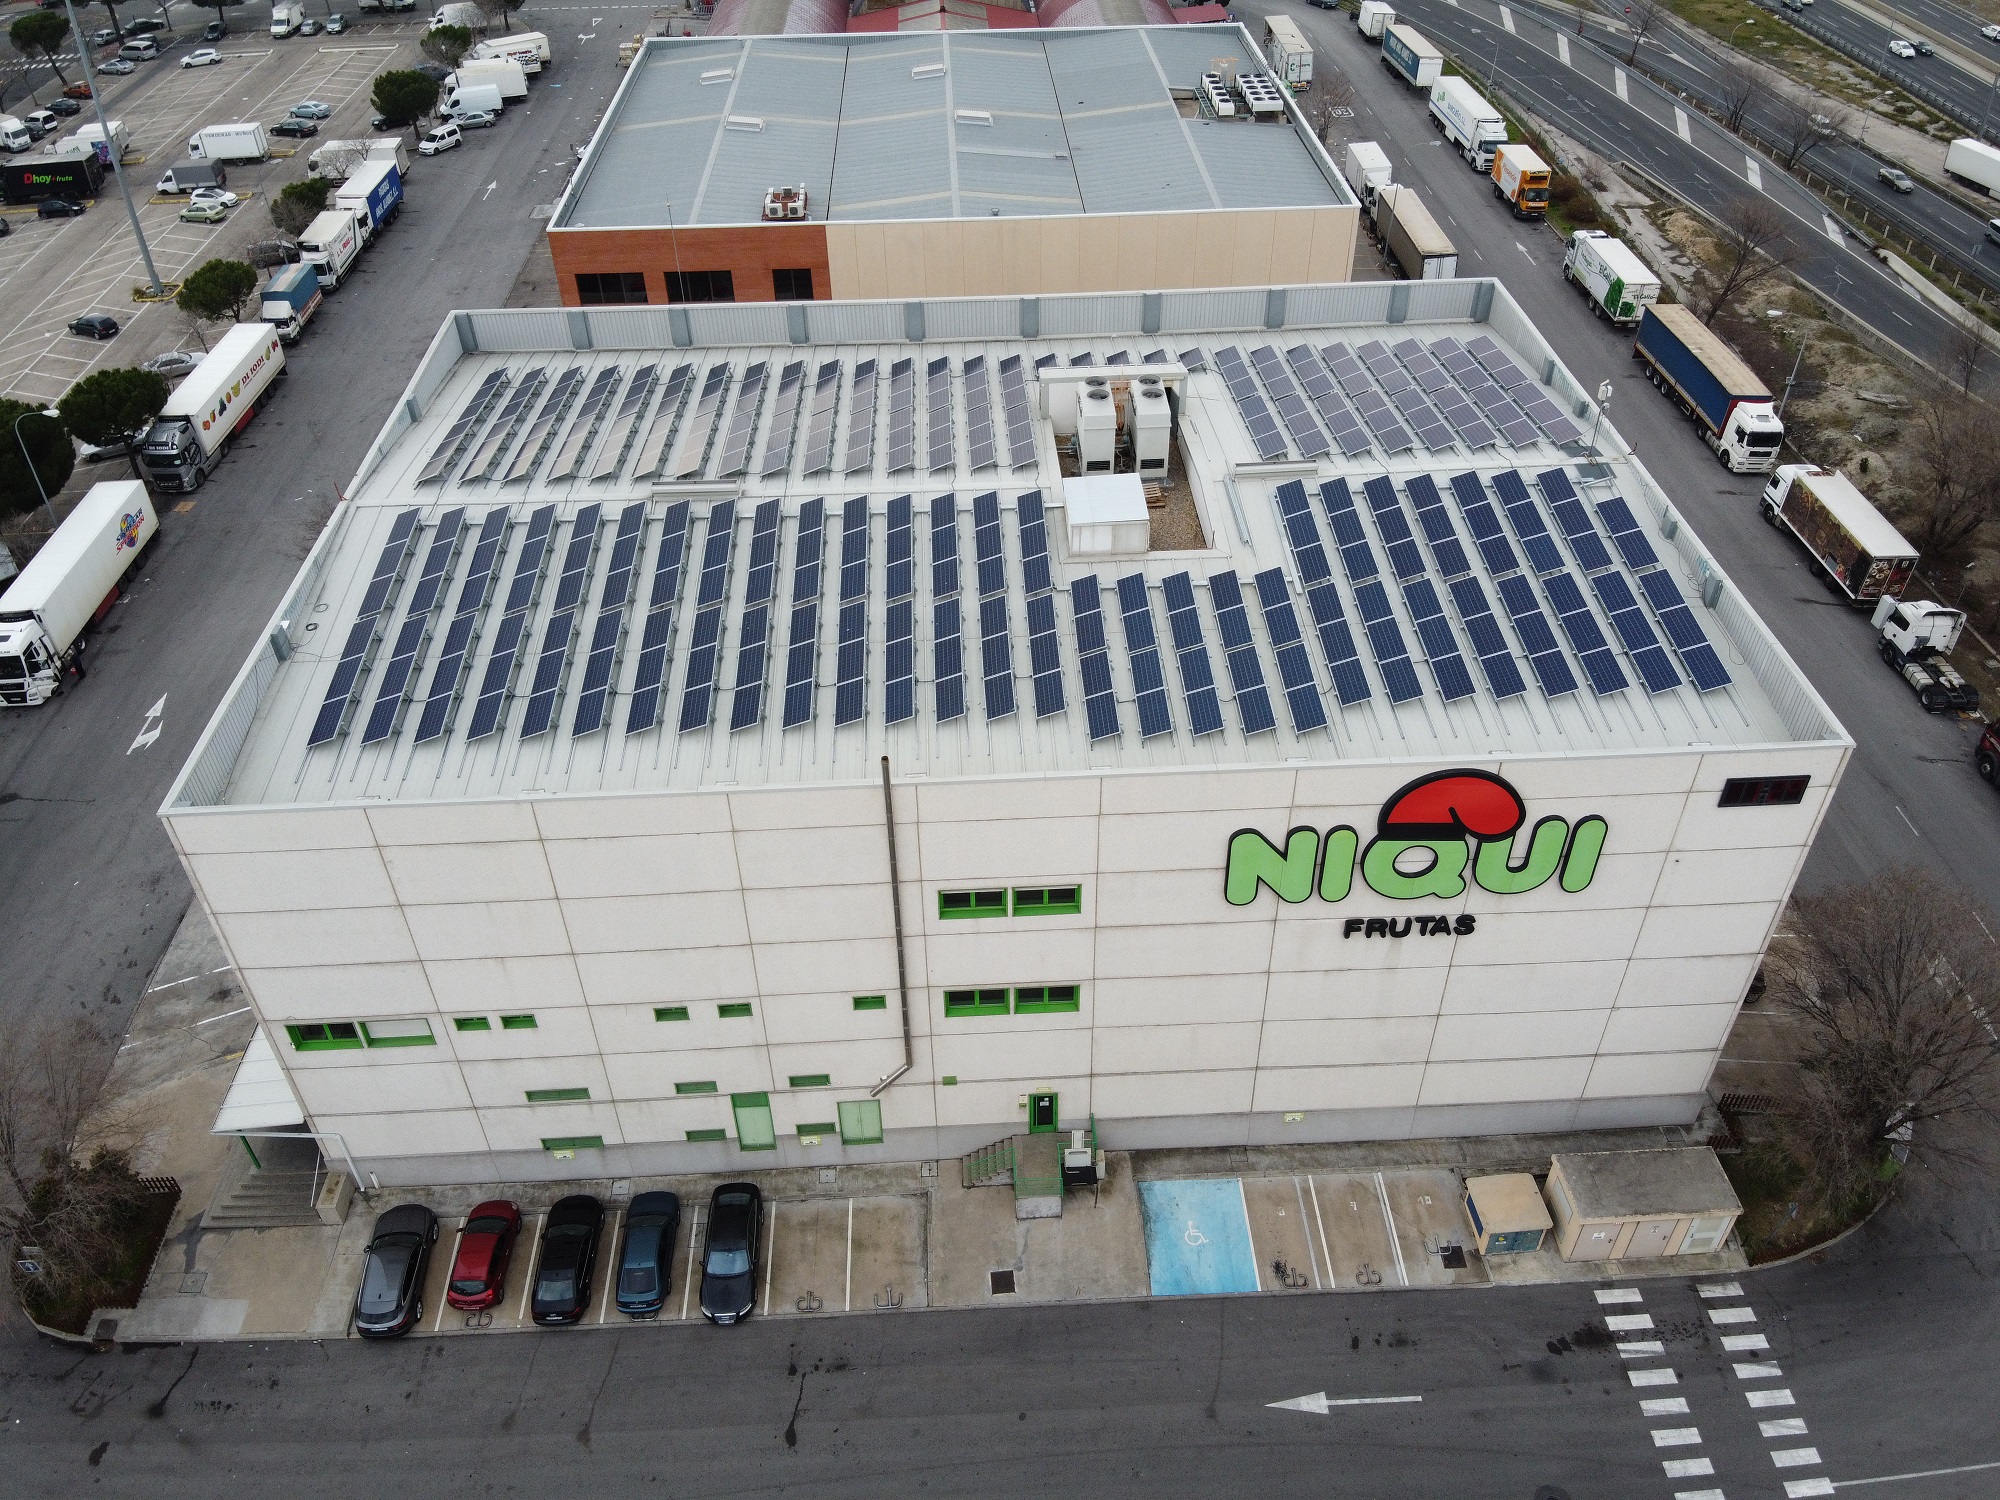 Opengy sigue la estela de Mercamadrid e instala una instalación solar fotovoltaica de autoconsumo en la sede de Frutas Niqui Madrimport